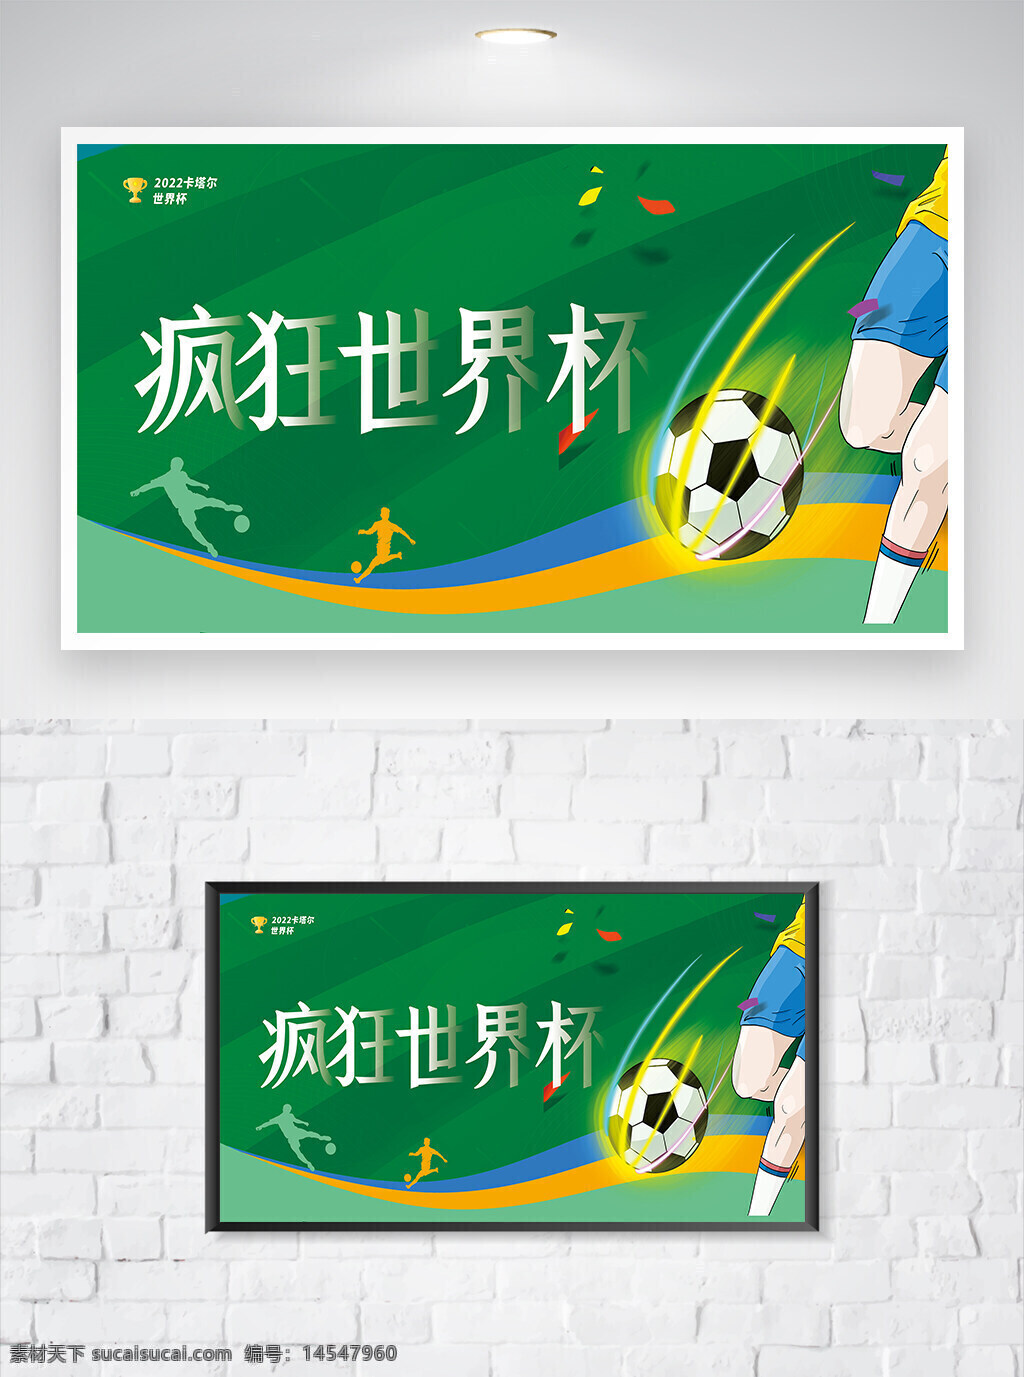 世界杯 世界杯宣传 世界杯海报 2022世界杯 卡塔尔世界杯 2022卡塔尔世界杯 卡通海报 宣传海报 海报